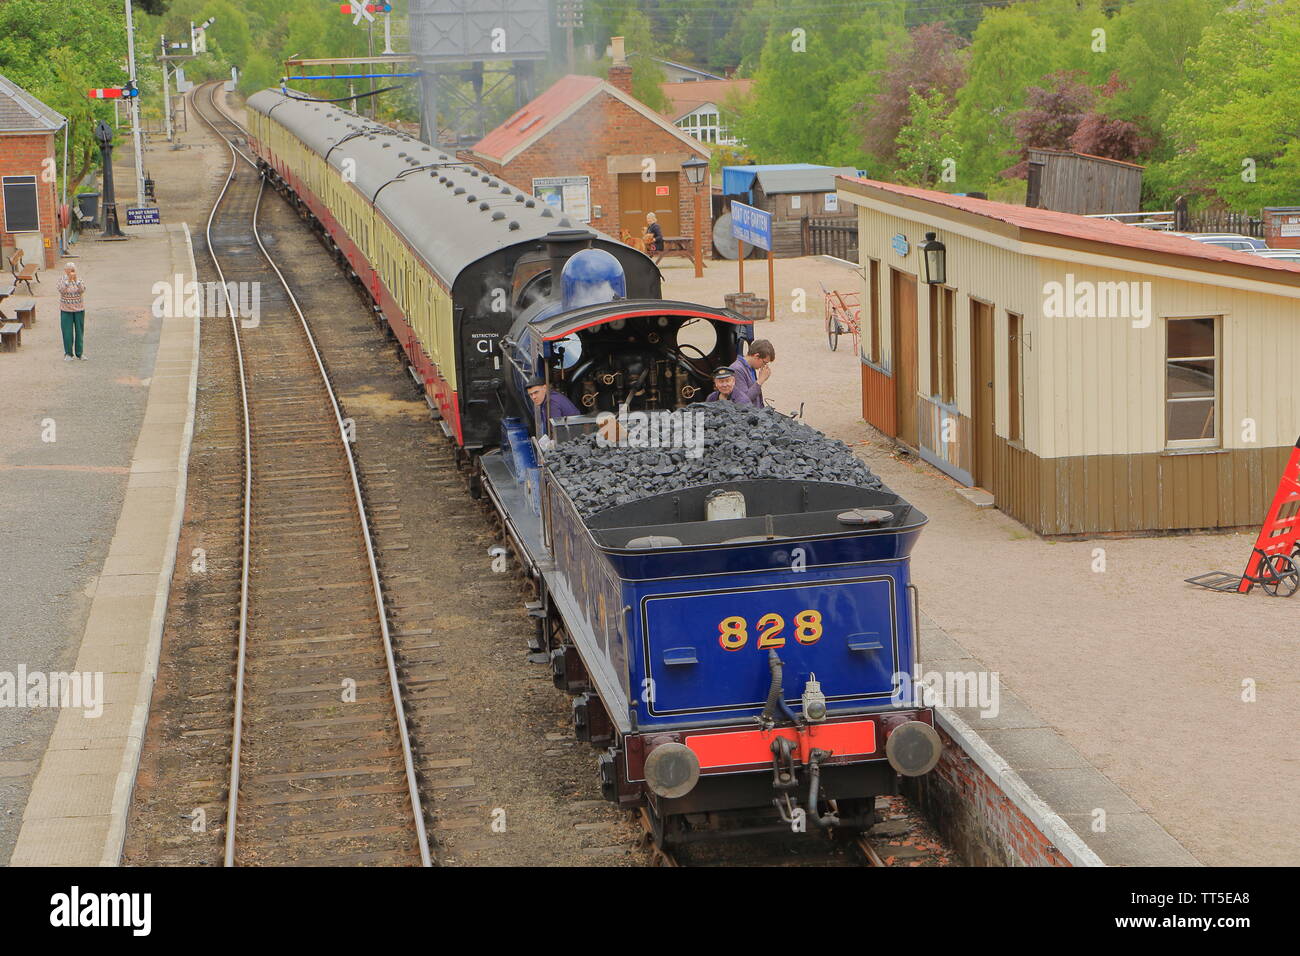 Strathspey Steam Railway; locomotive 828, 812 class steam train in Boat of Garten station. Scotland UK Stock Photo